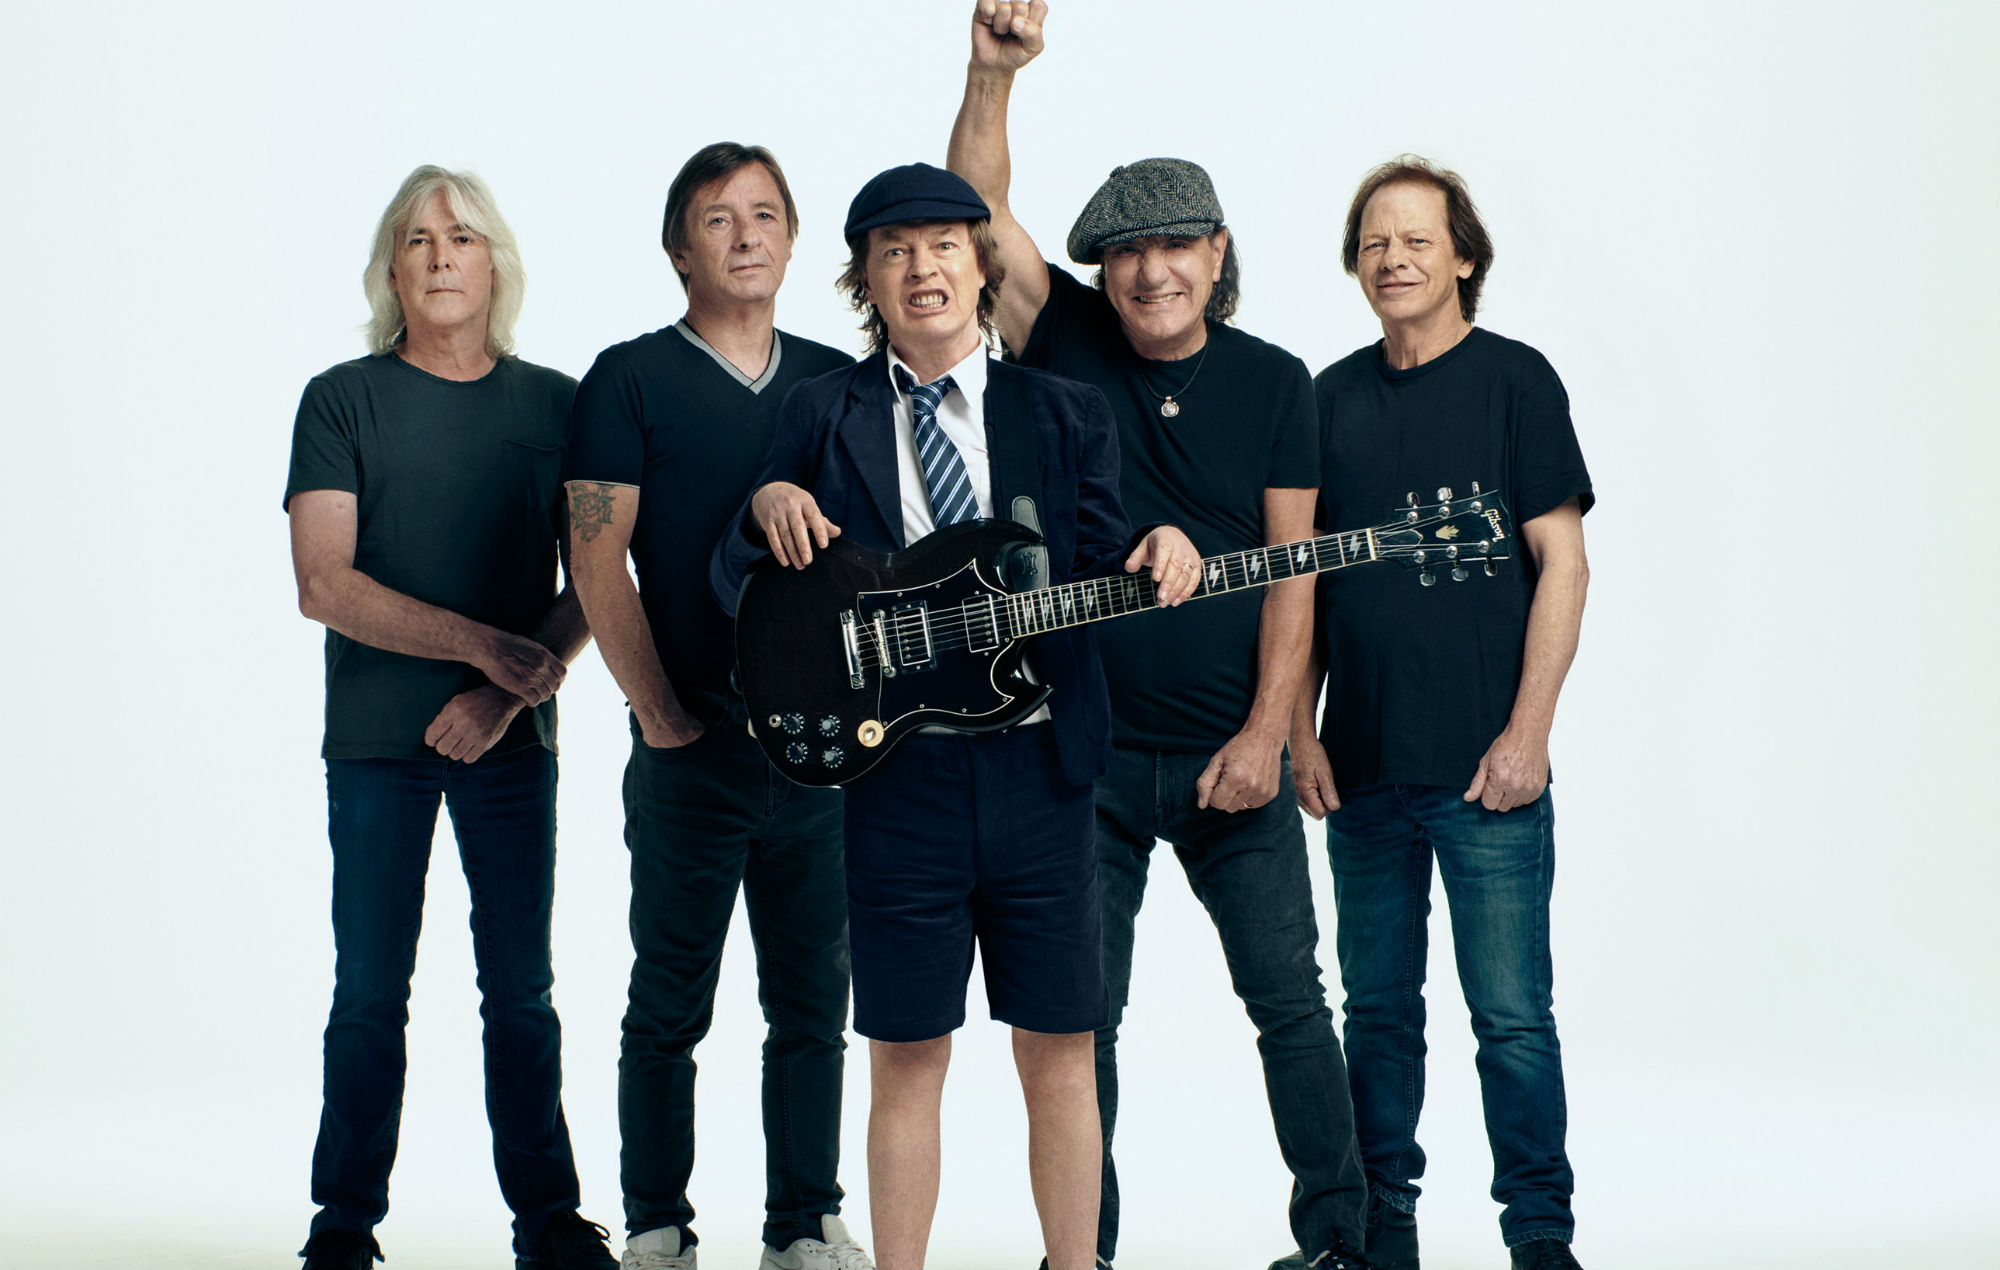 AC/DC – tornano con “POWER UP”, il nuovo atteso album in uscita il 13 novembre! Da oggi disponibile in digitale il singolo “Shot In The Dark”